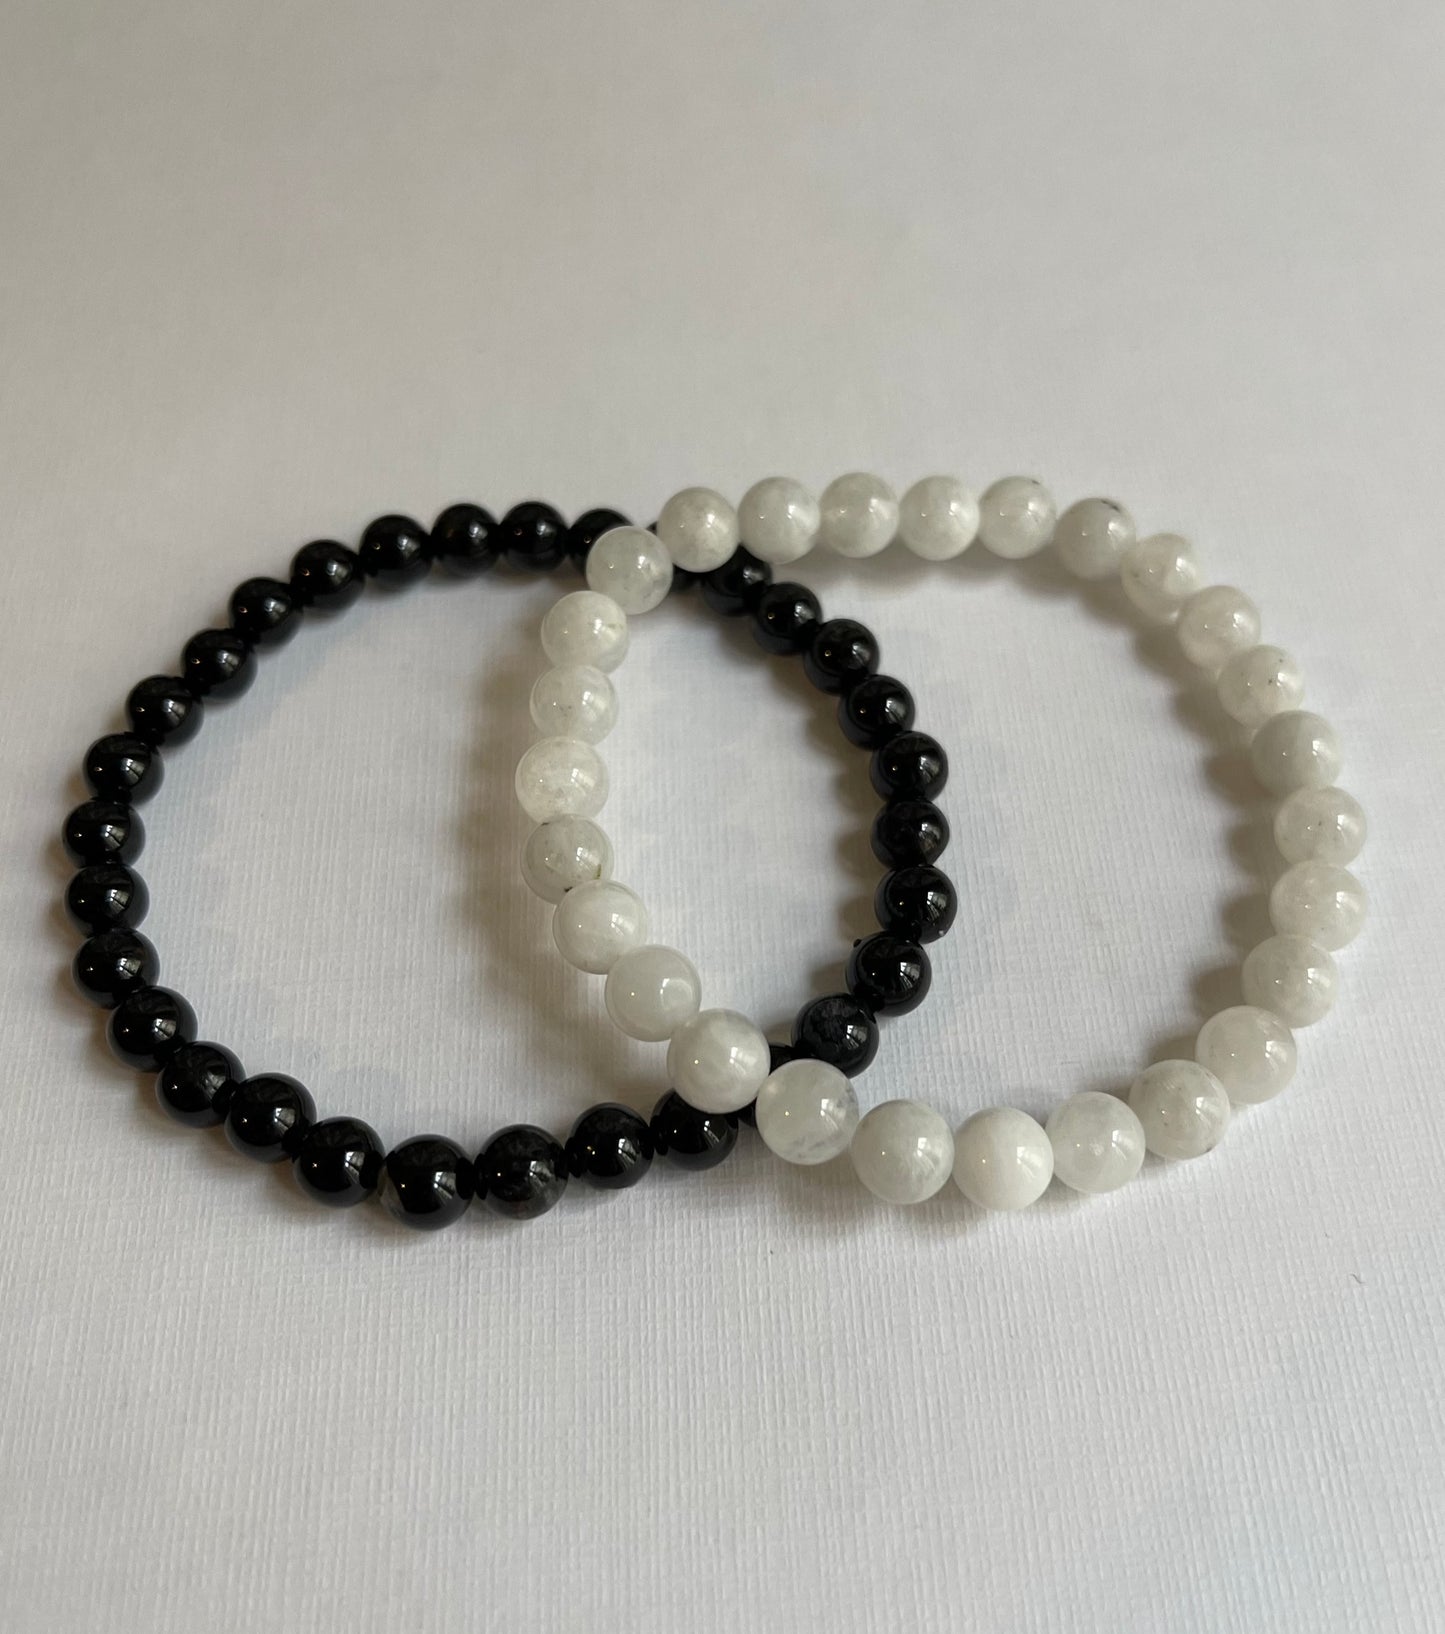 Yin & Yang bracelets